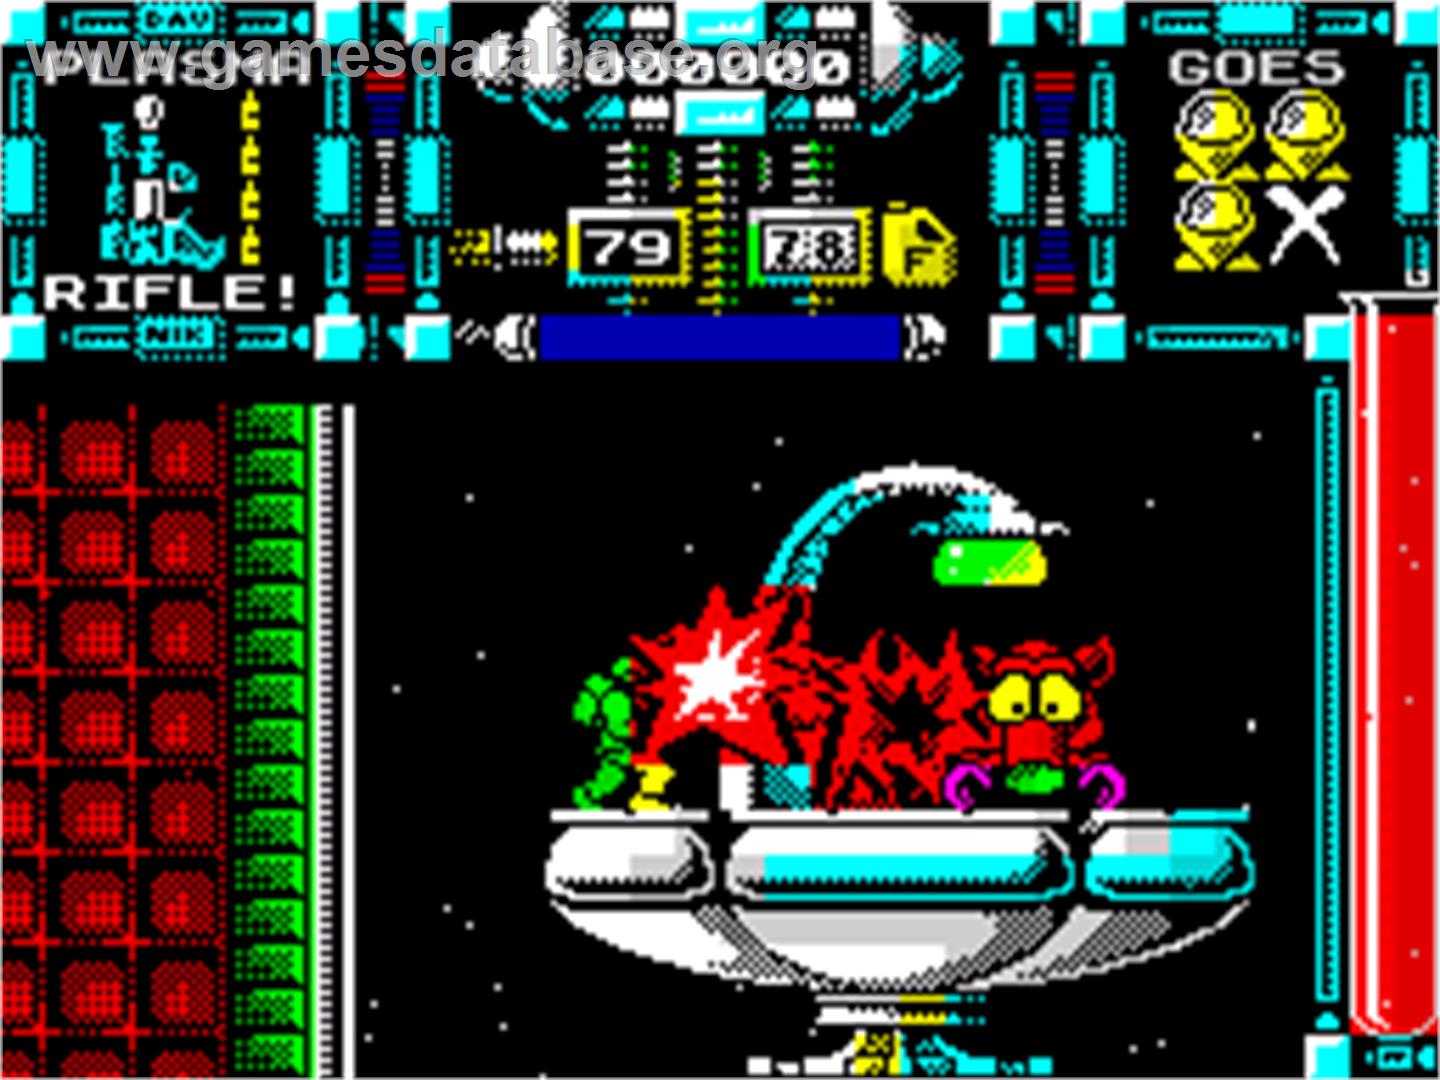 Dan Dare III: The Escape - Sinclair ZX Spectrum - Artwork - In Game